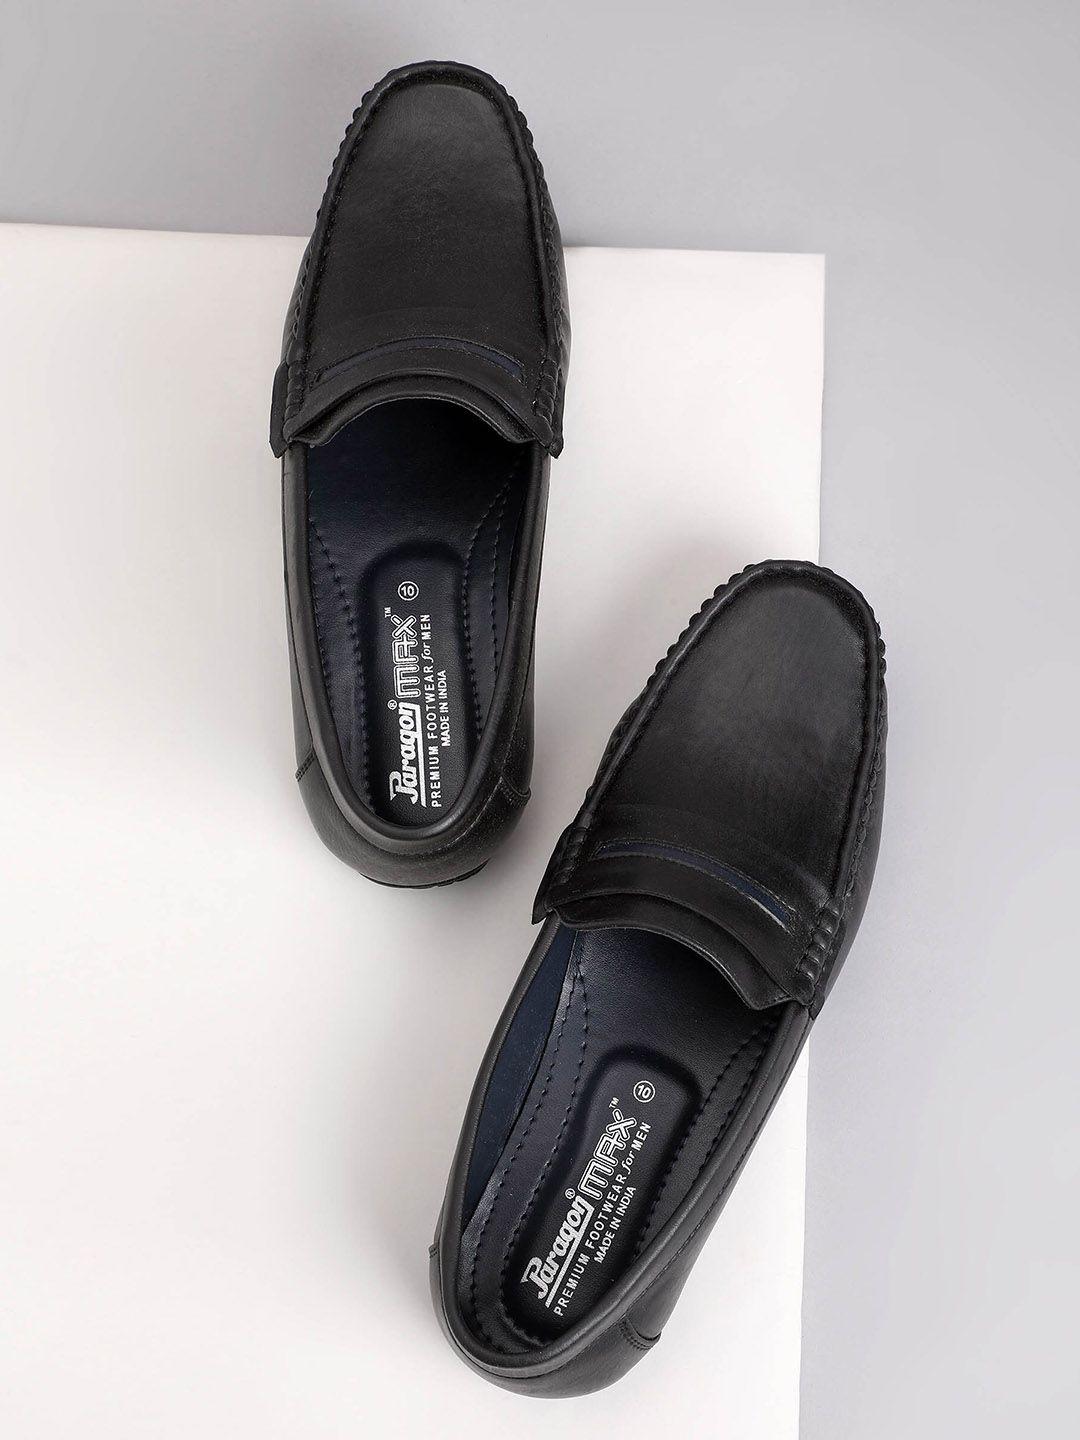 paragon-men-formal-slip-on-loafers